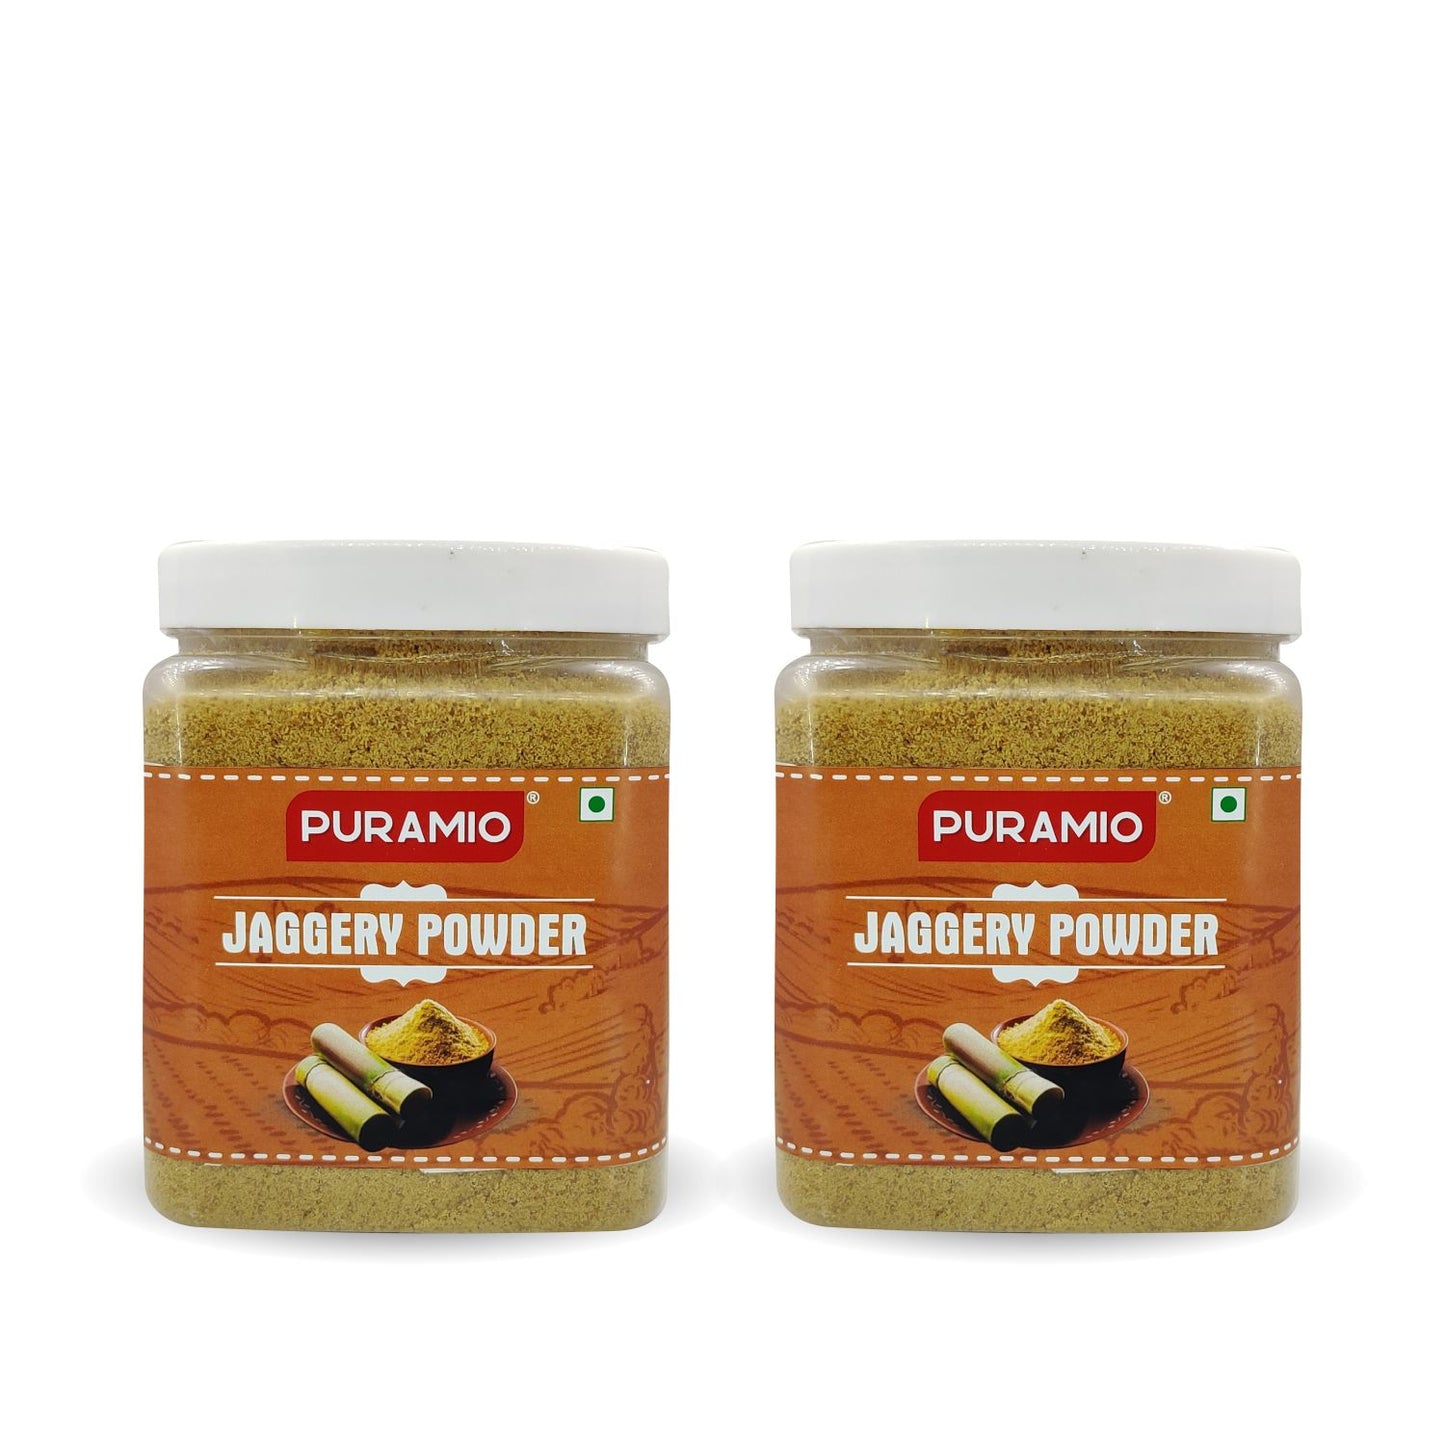 Puramio Jaggery Powder, 600gm (Pack of 2)